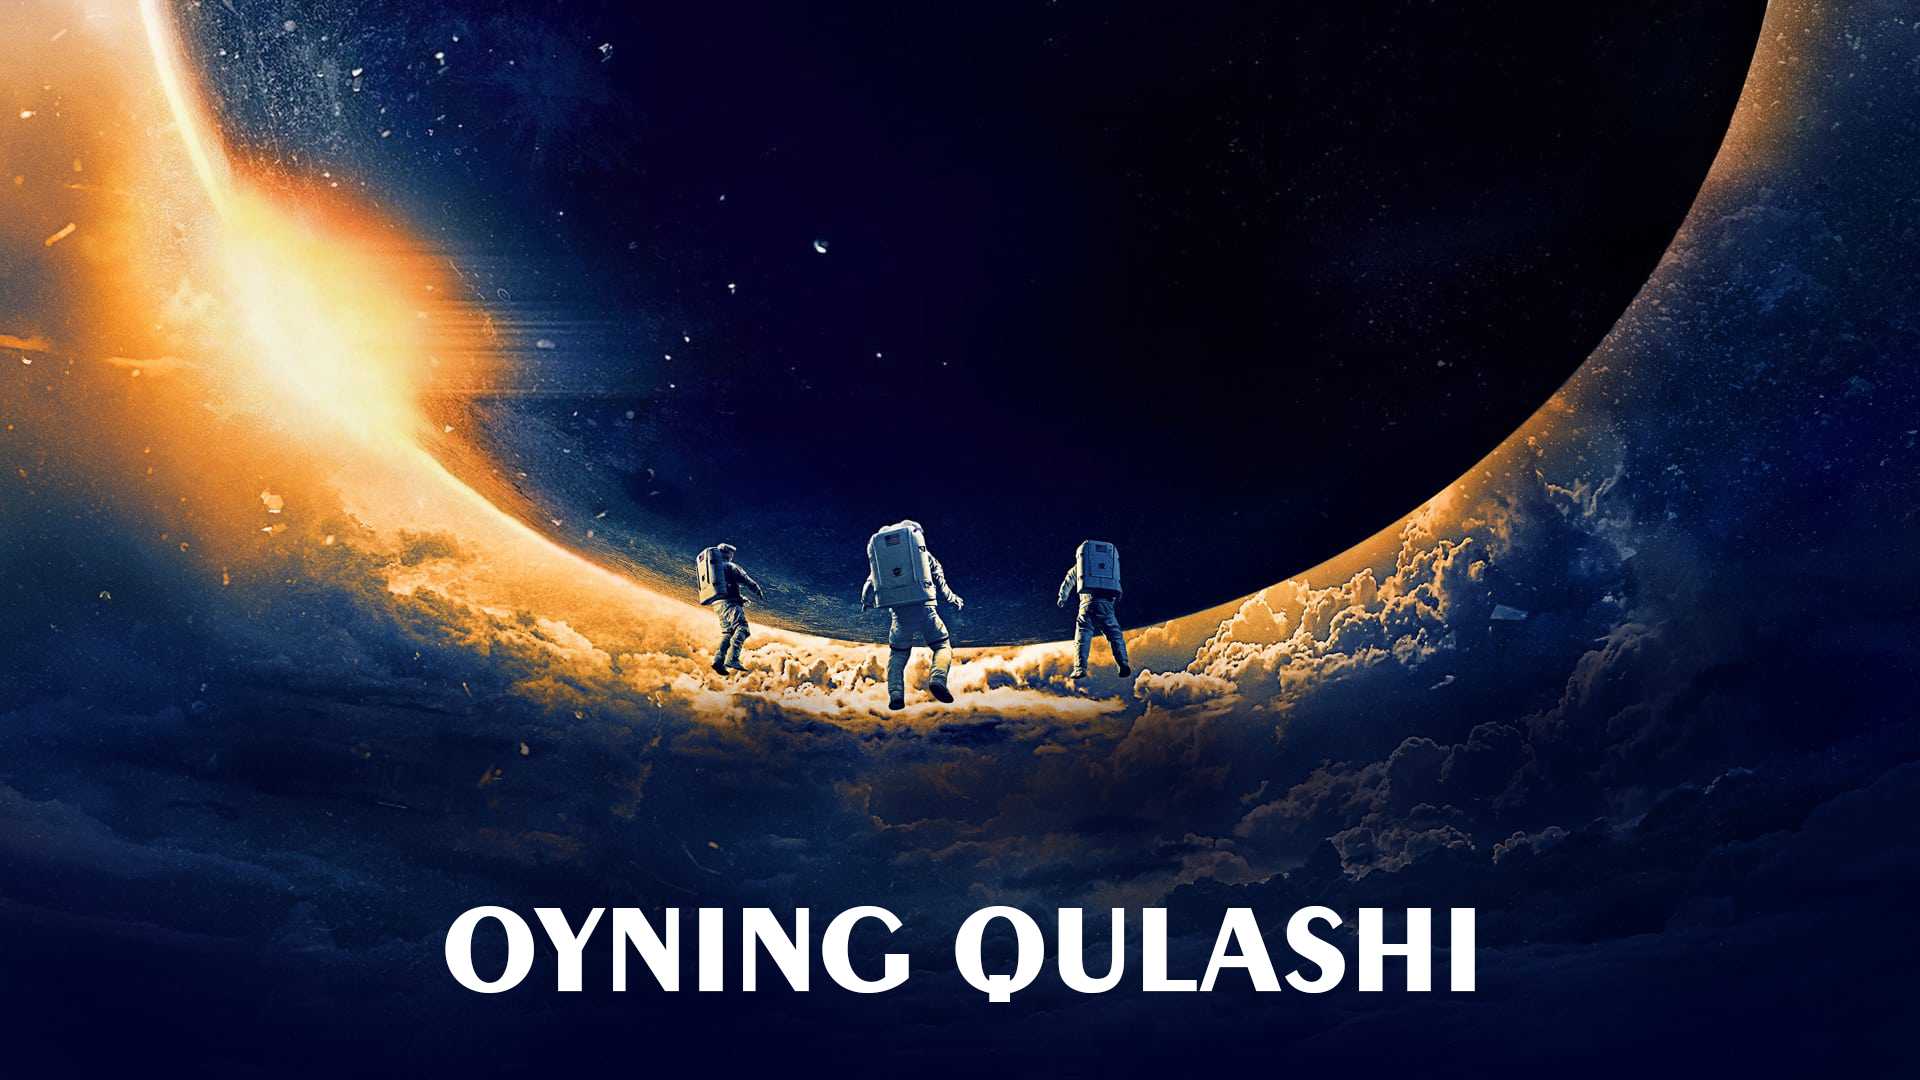 Oyning qulashi